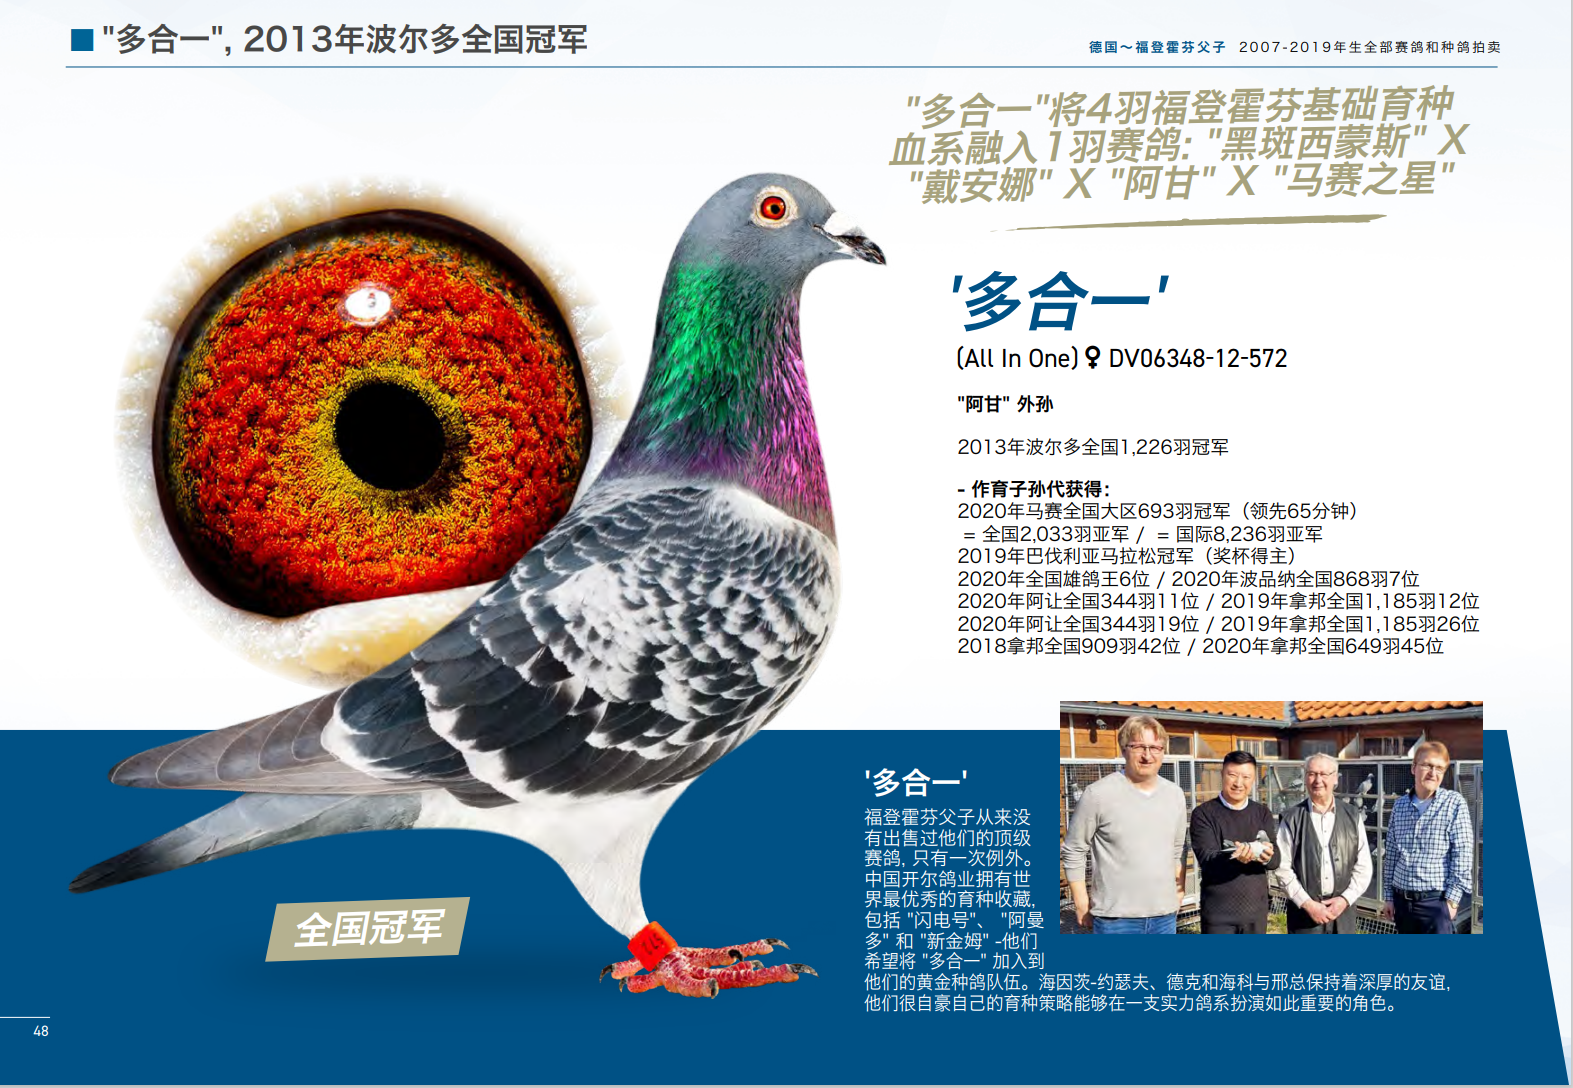 飞扬赛鸽摄影专业制作信鸽照片-中国信鸽信息网 www.chinaxinge.com